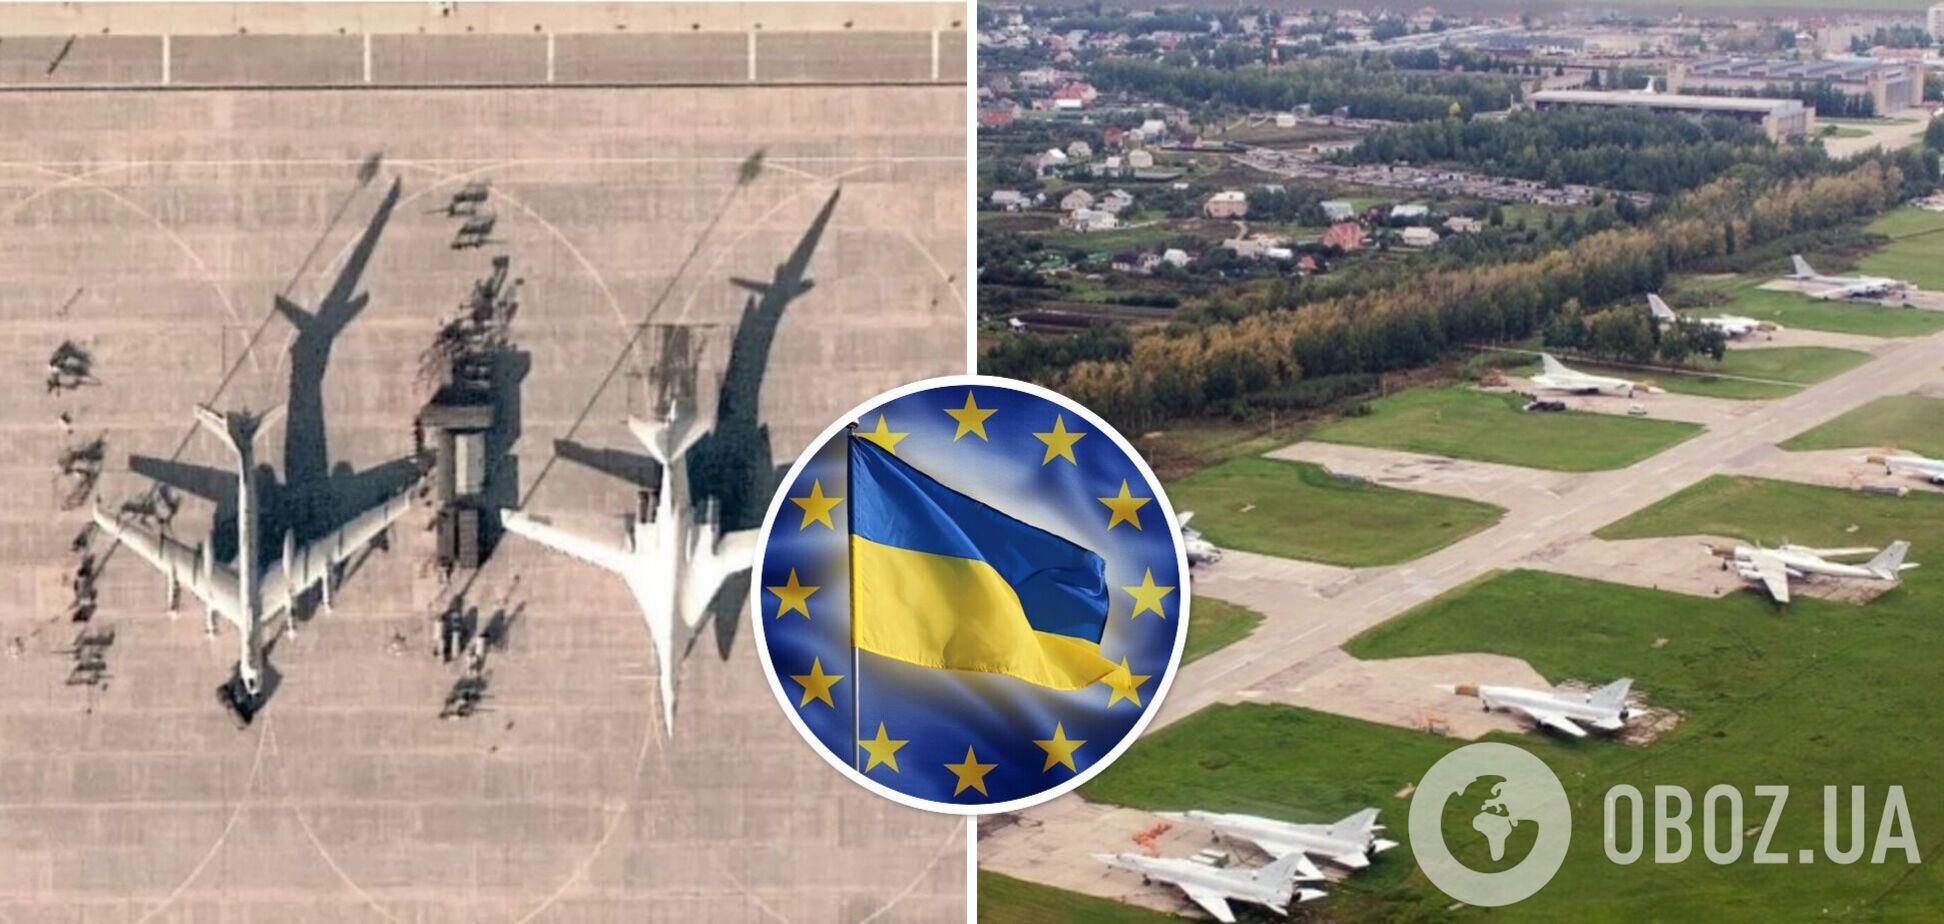 Законне право України: в Єврокомісії прокоментували вибухи на аеродромах в Енгельсі та під Рязанню 